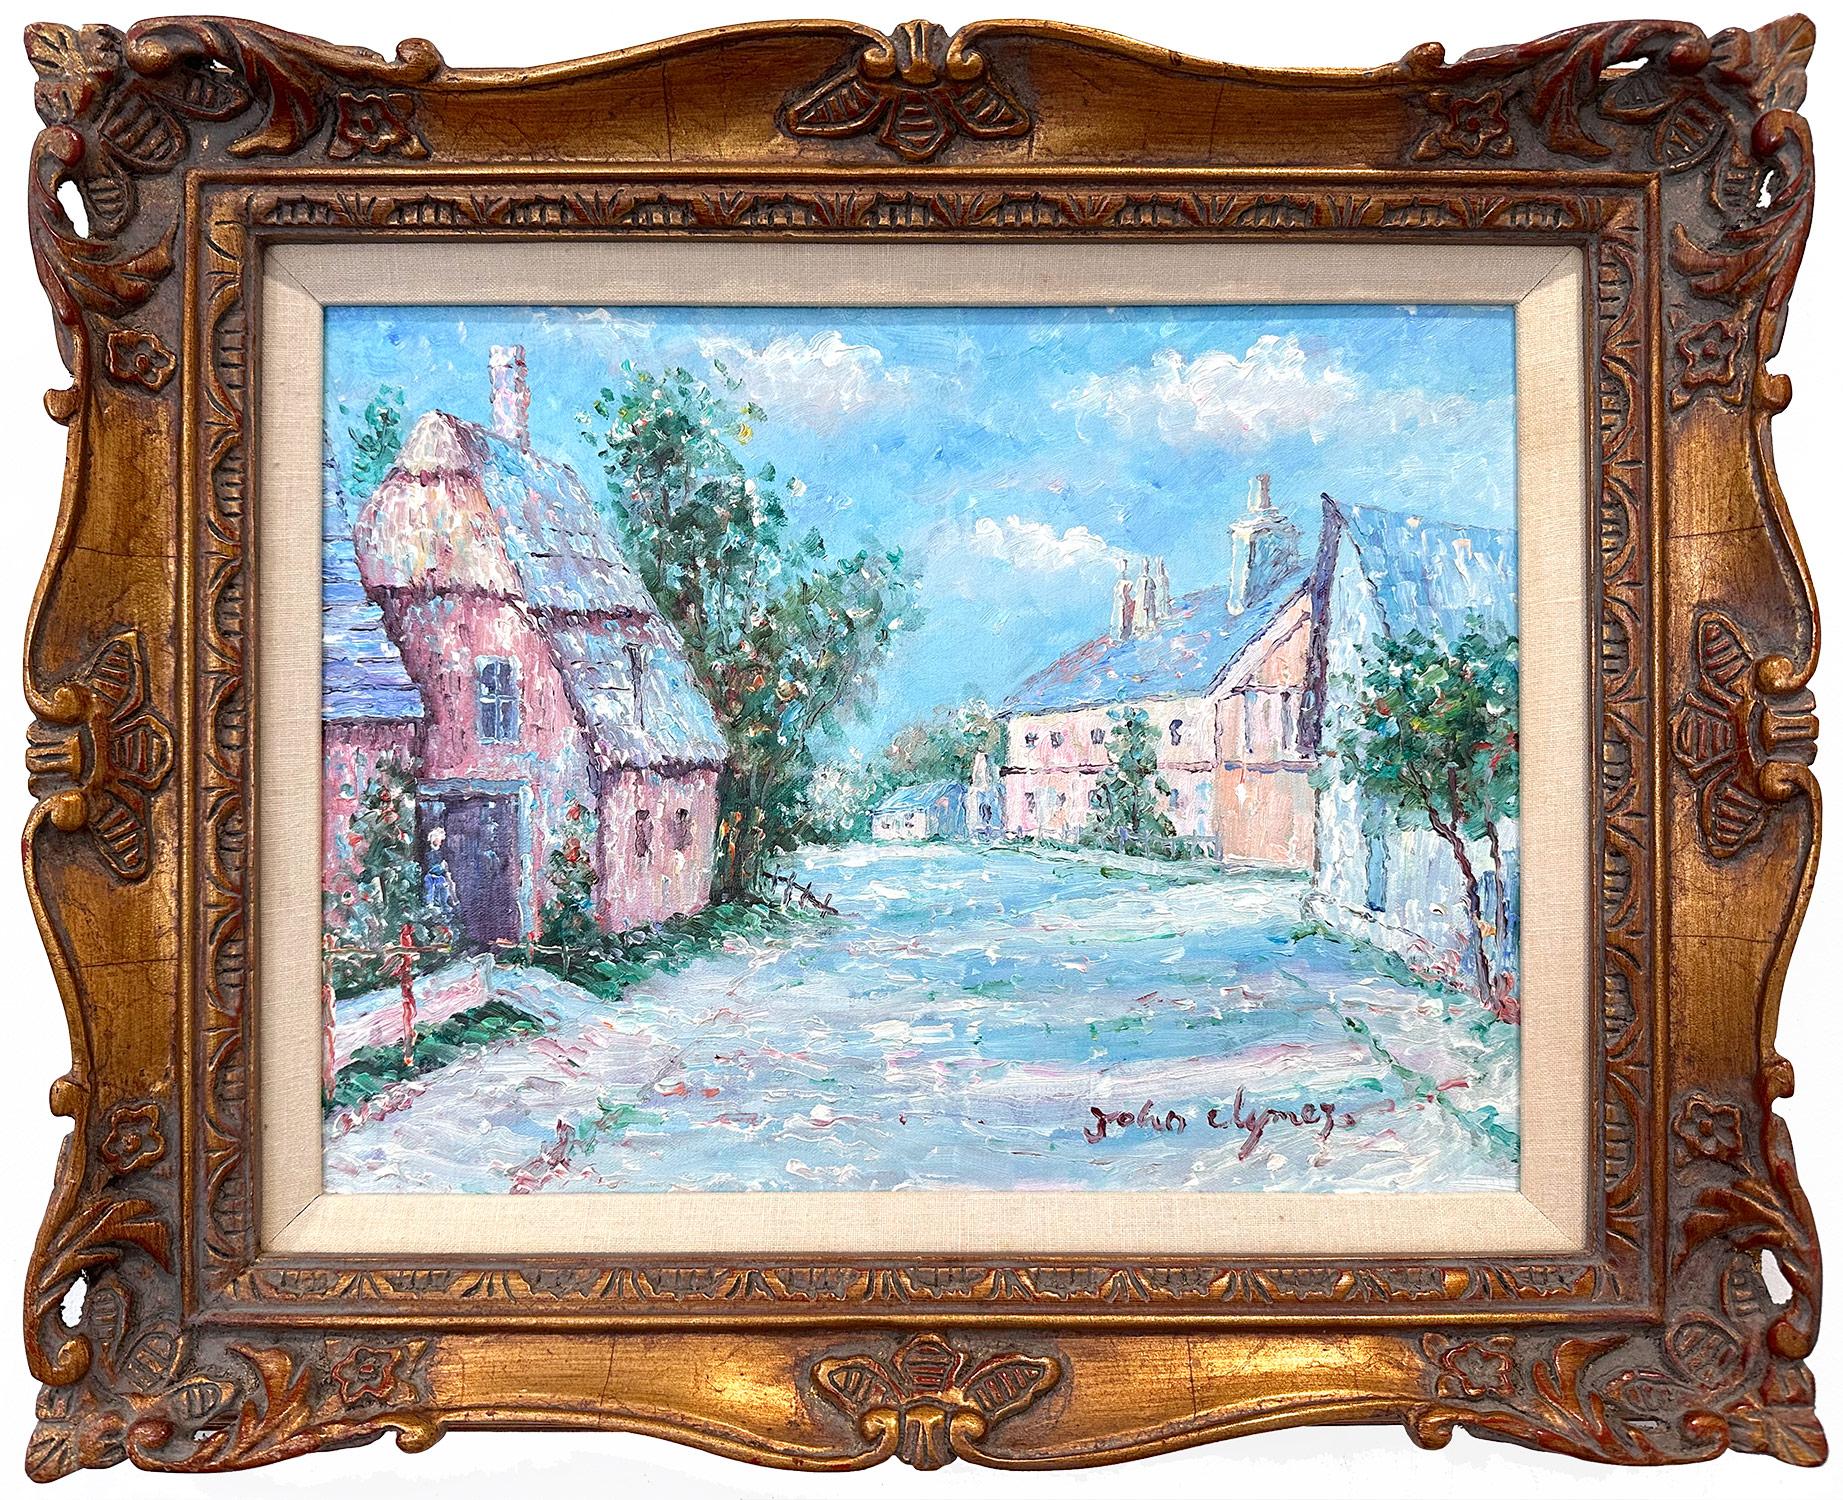 Landscape Painting John Clymer - "Figure dans le Village" Peinture à l'huile impressionniste britannique américaine sur toile